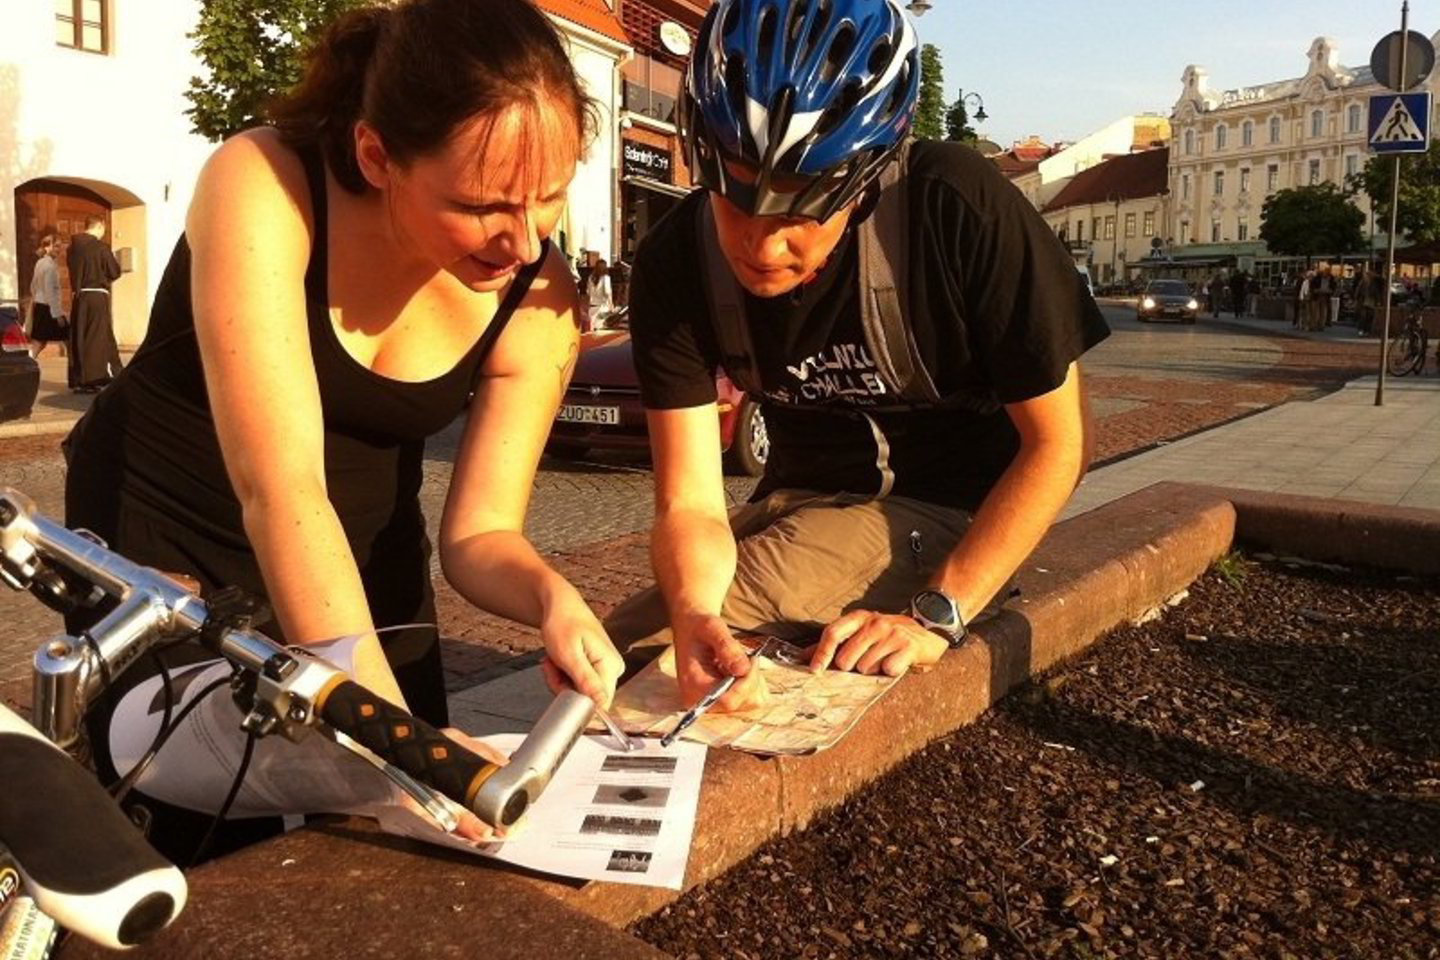 Ketvirtadienio vakaras Vilniuje - su dviračiu ir žemėlapiu rankose.<br>Organizatorių nuotr.